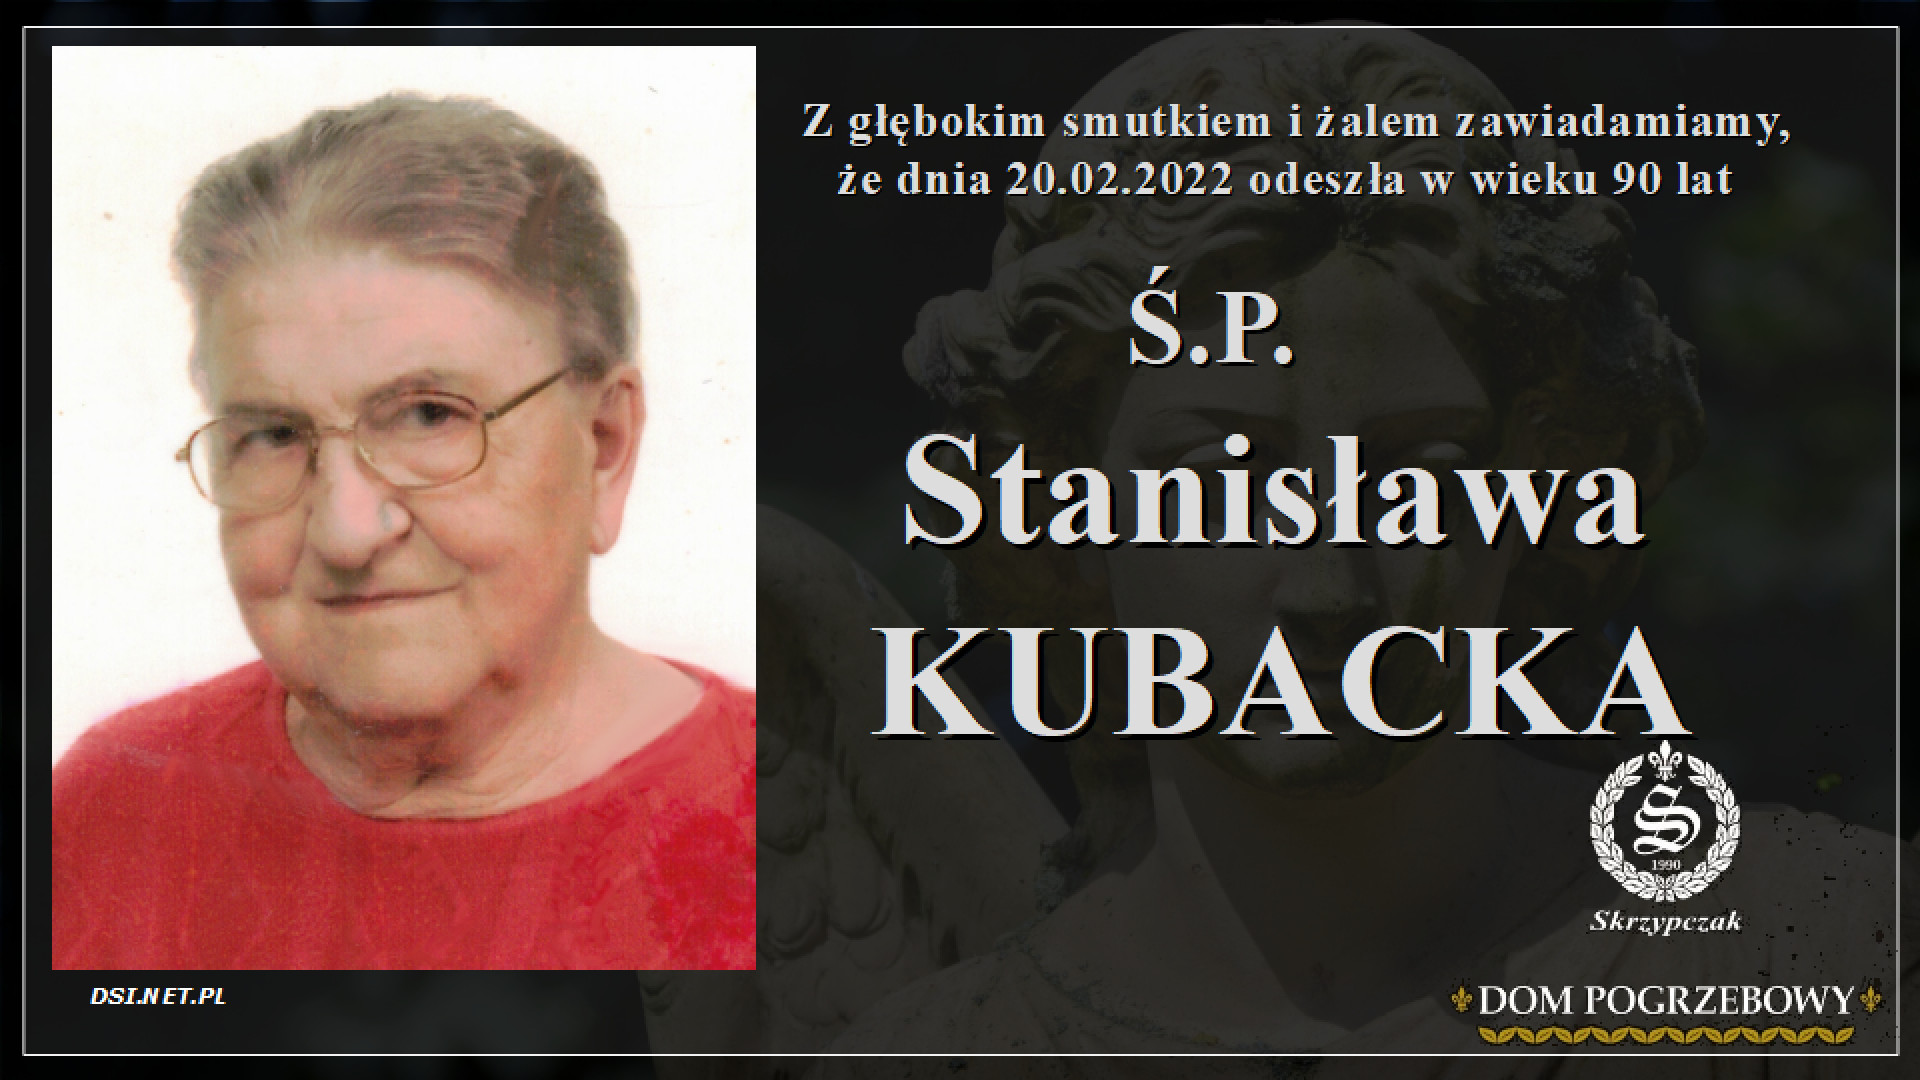 Ś.P. Stanisława Kubacka